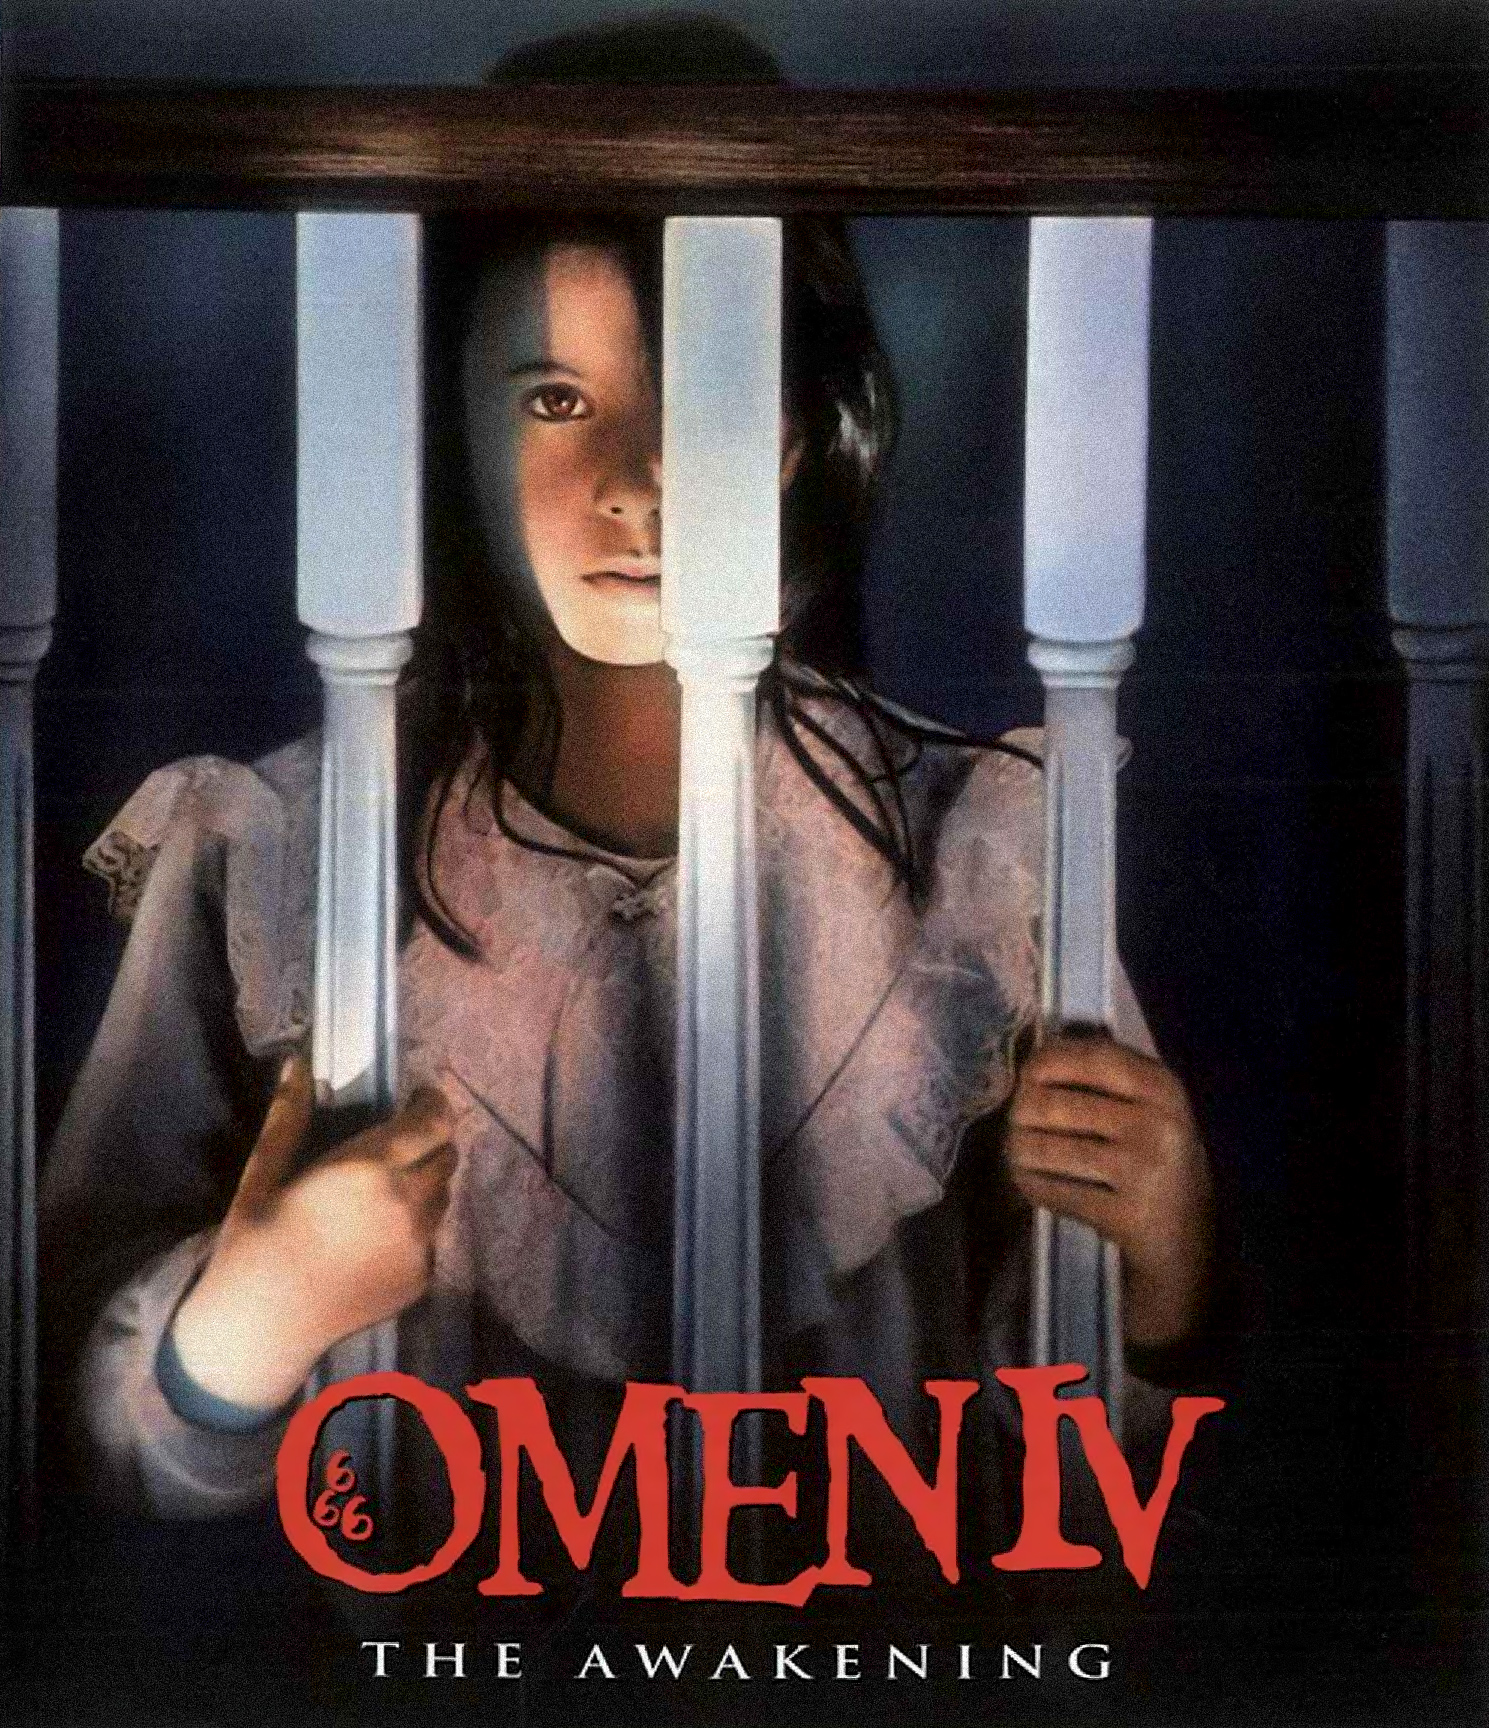 1991 Omen IV: The Awakening